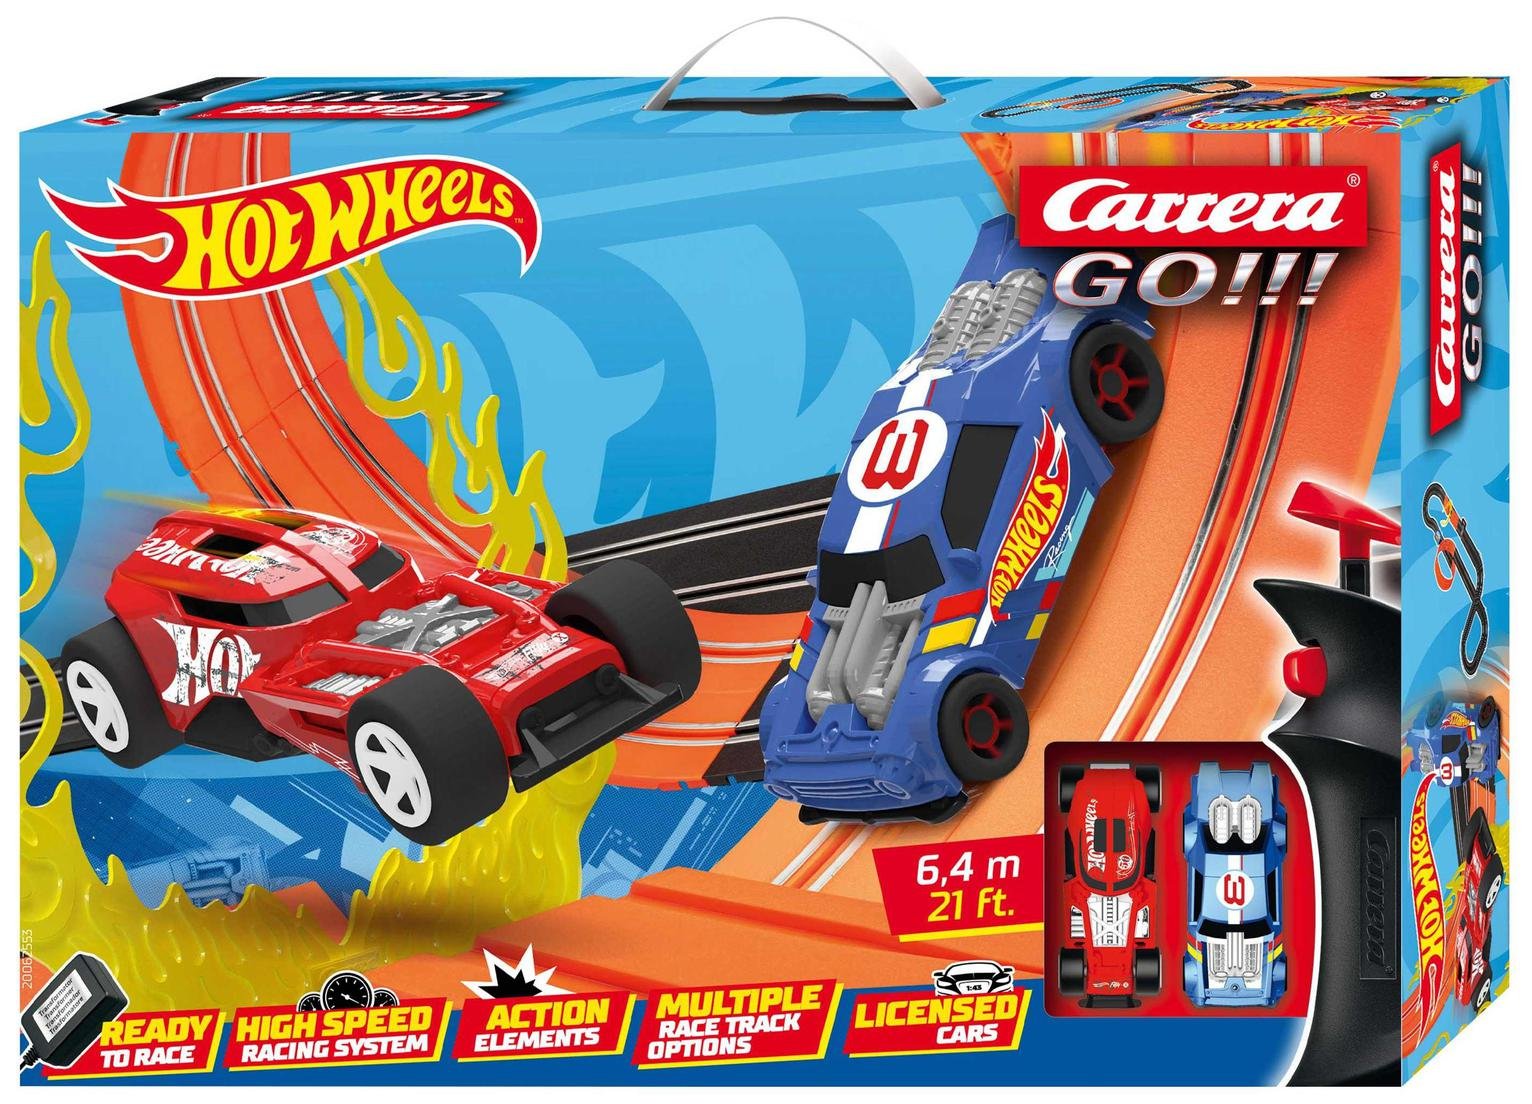 Carrera GO!!! Hot Wheels 6.4 Slot Racing Set (6.4m)